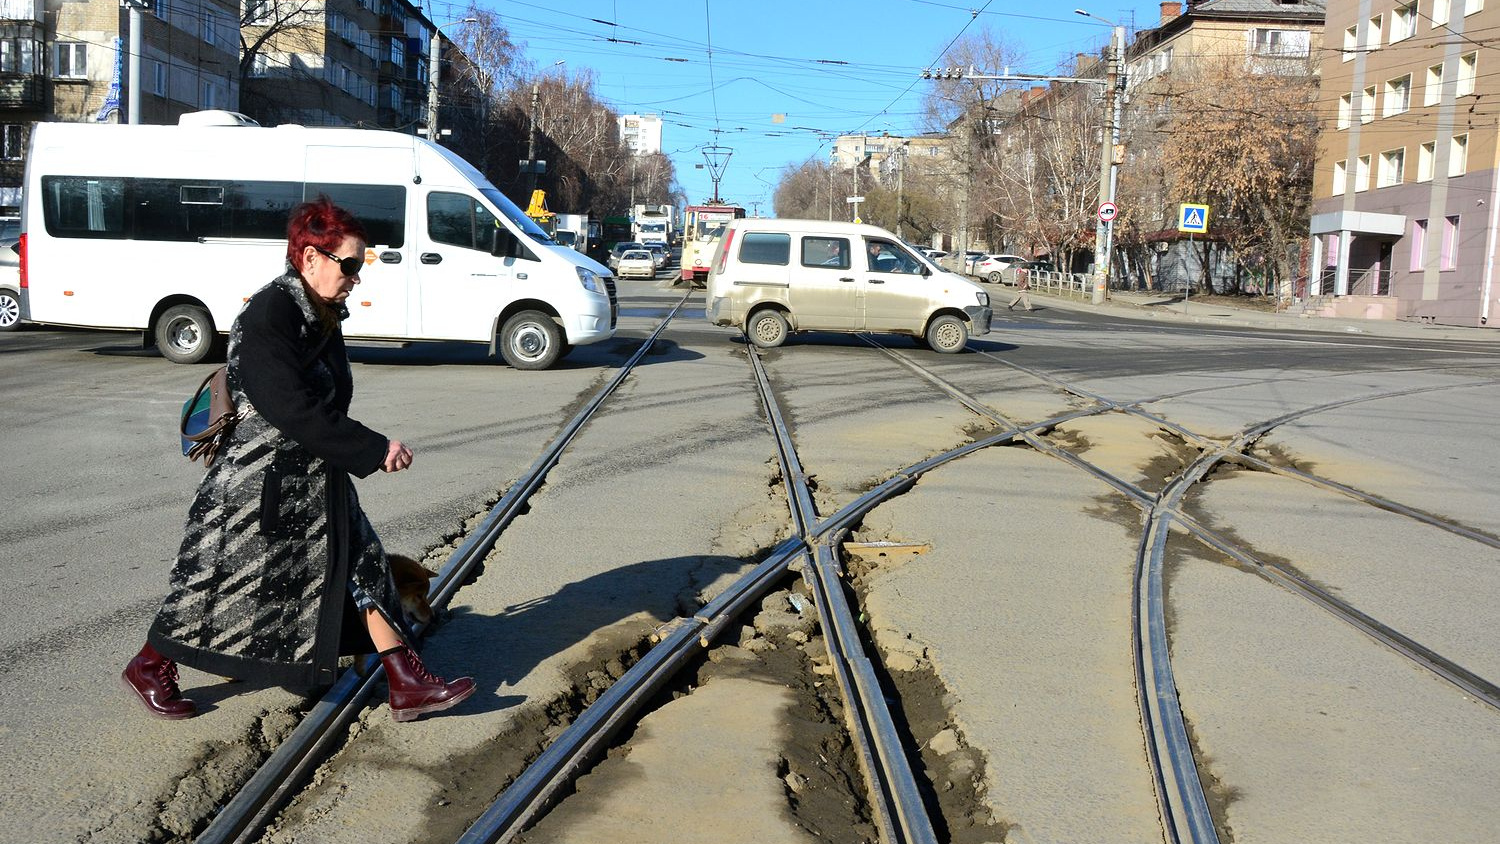 Аж позвоночник вываливается: смотрим, во что превратились трамвайные переезды Челябинска весной